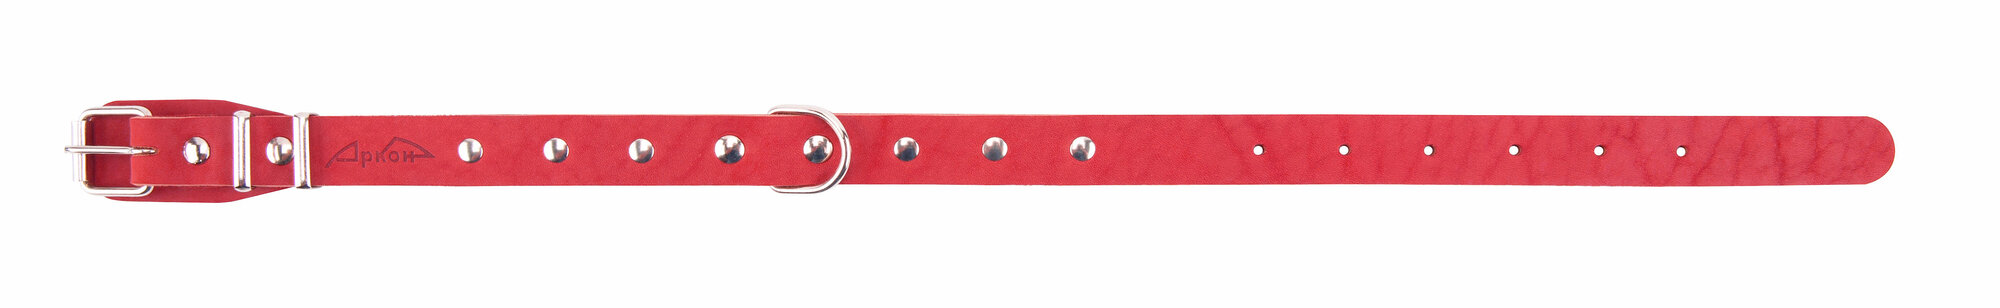 Ошейник аркон кожаный для собак однослойный, украшения. красный (32-44 см/20 мм)